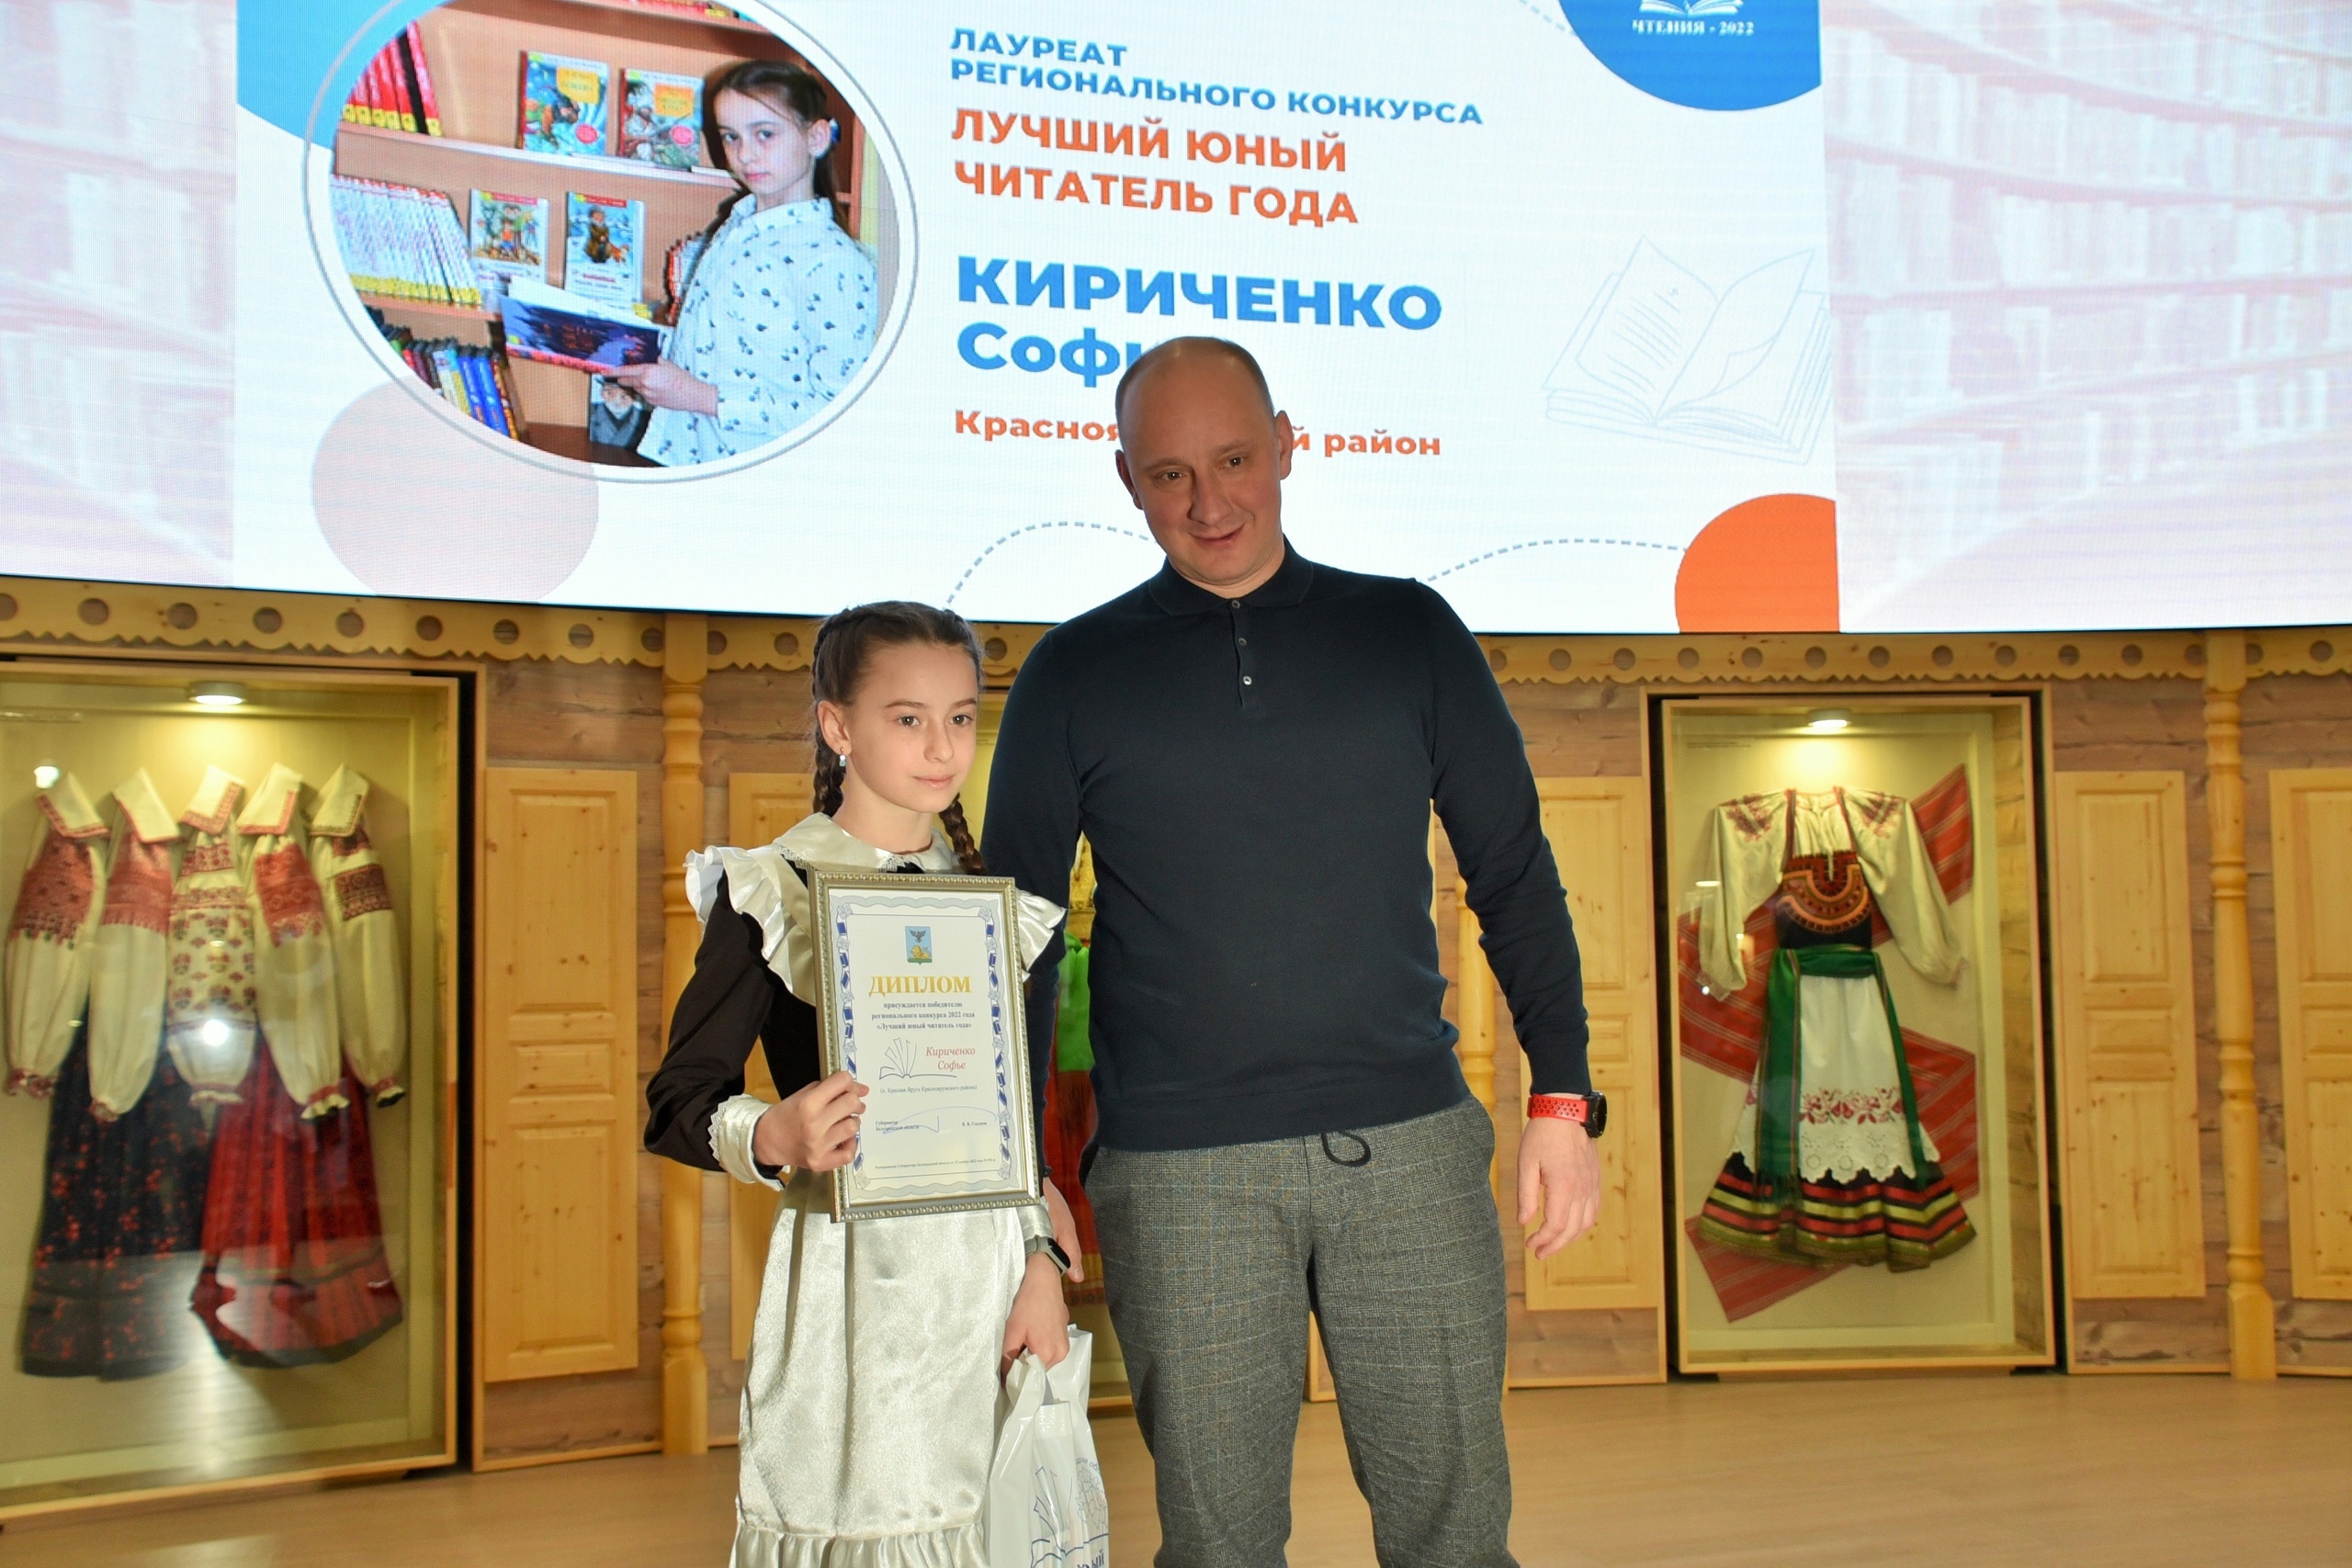 Софья Кириченко из Краснояружского района вошла в число лучших юных читателей Белгородчины.